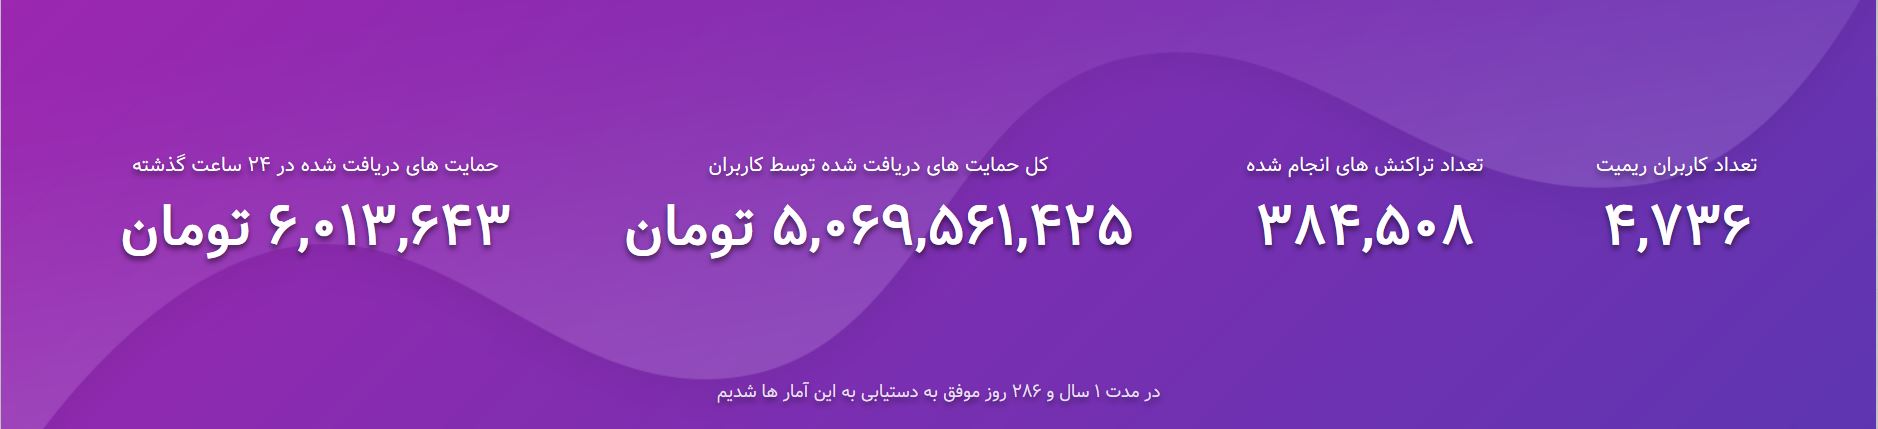 حمایت کاربران پلتفرم ریمیت از استریمرهای ایرانی به ۵ میلیارد رسید - ویجیاتو